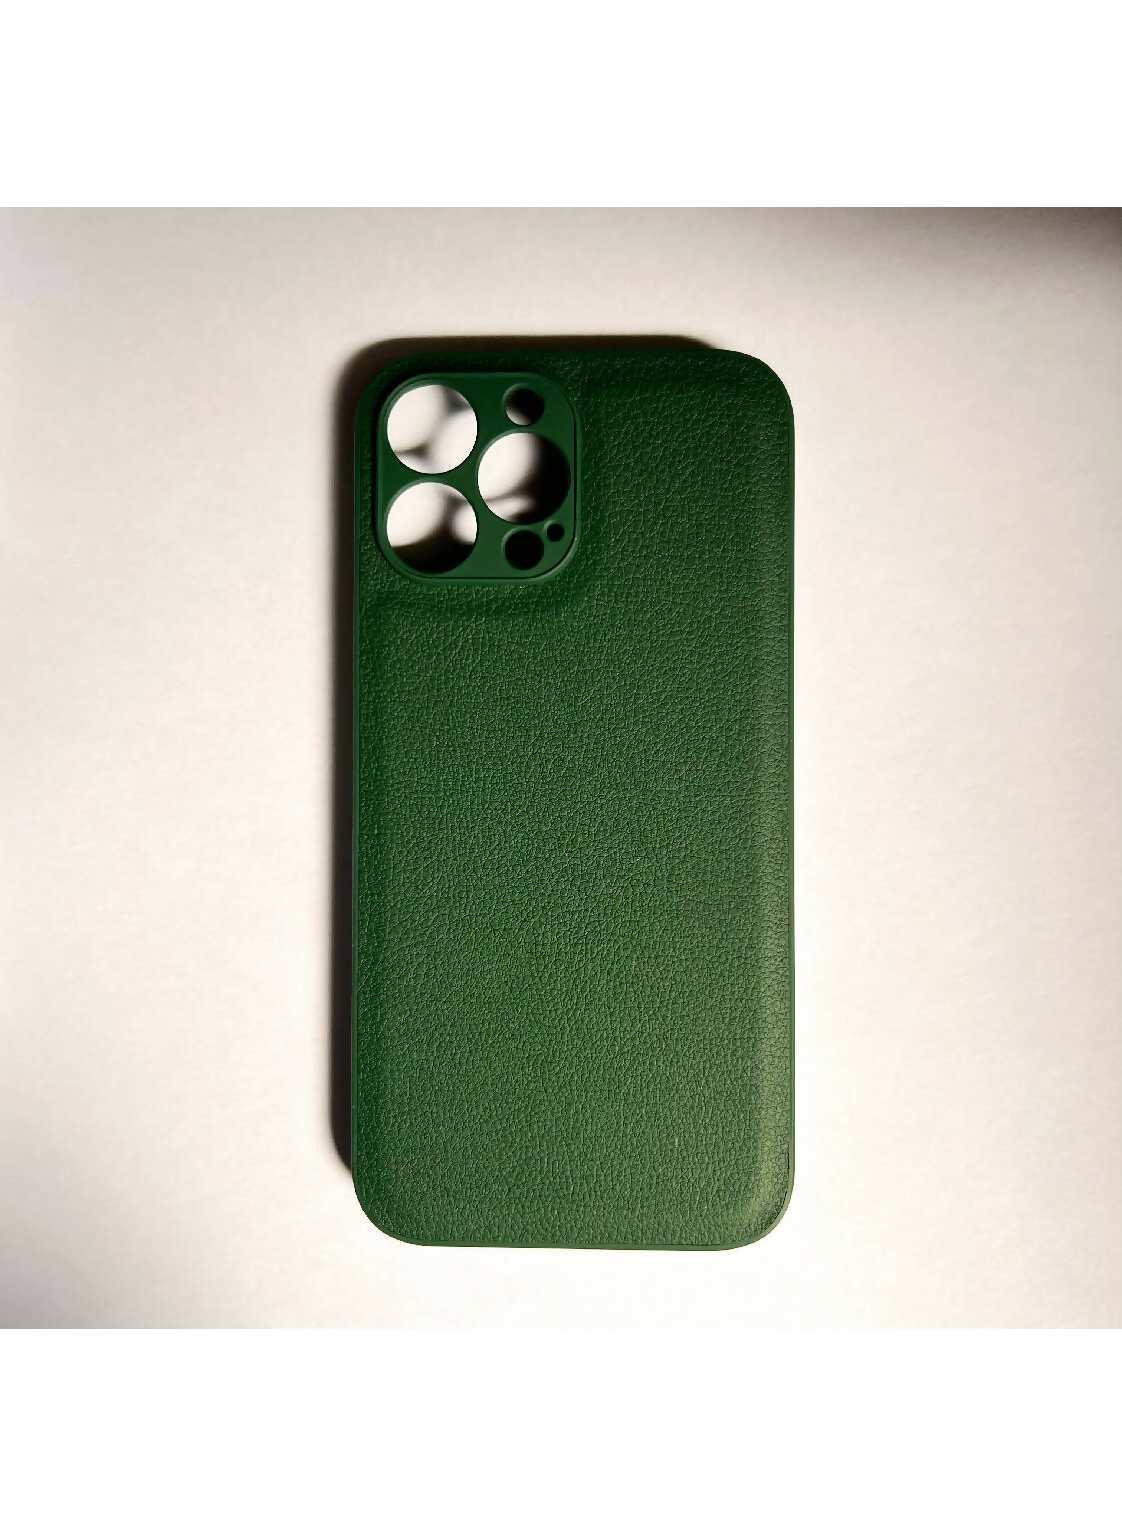 Ghazala iPhone Case - Green